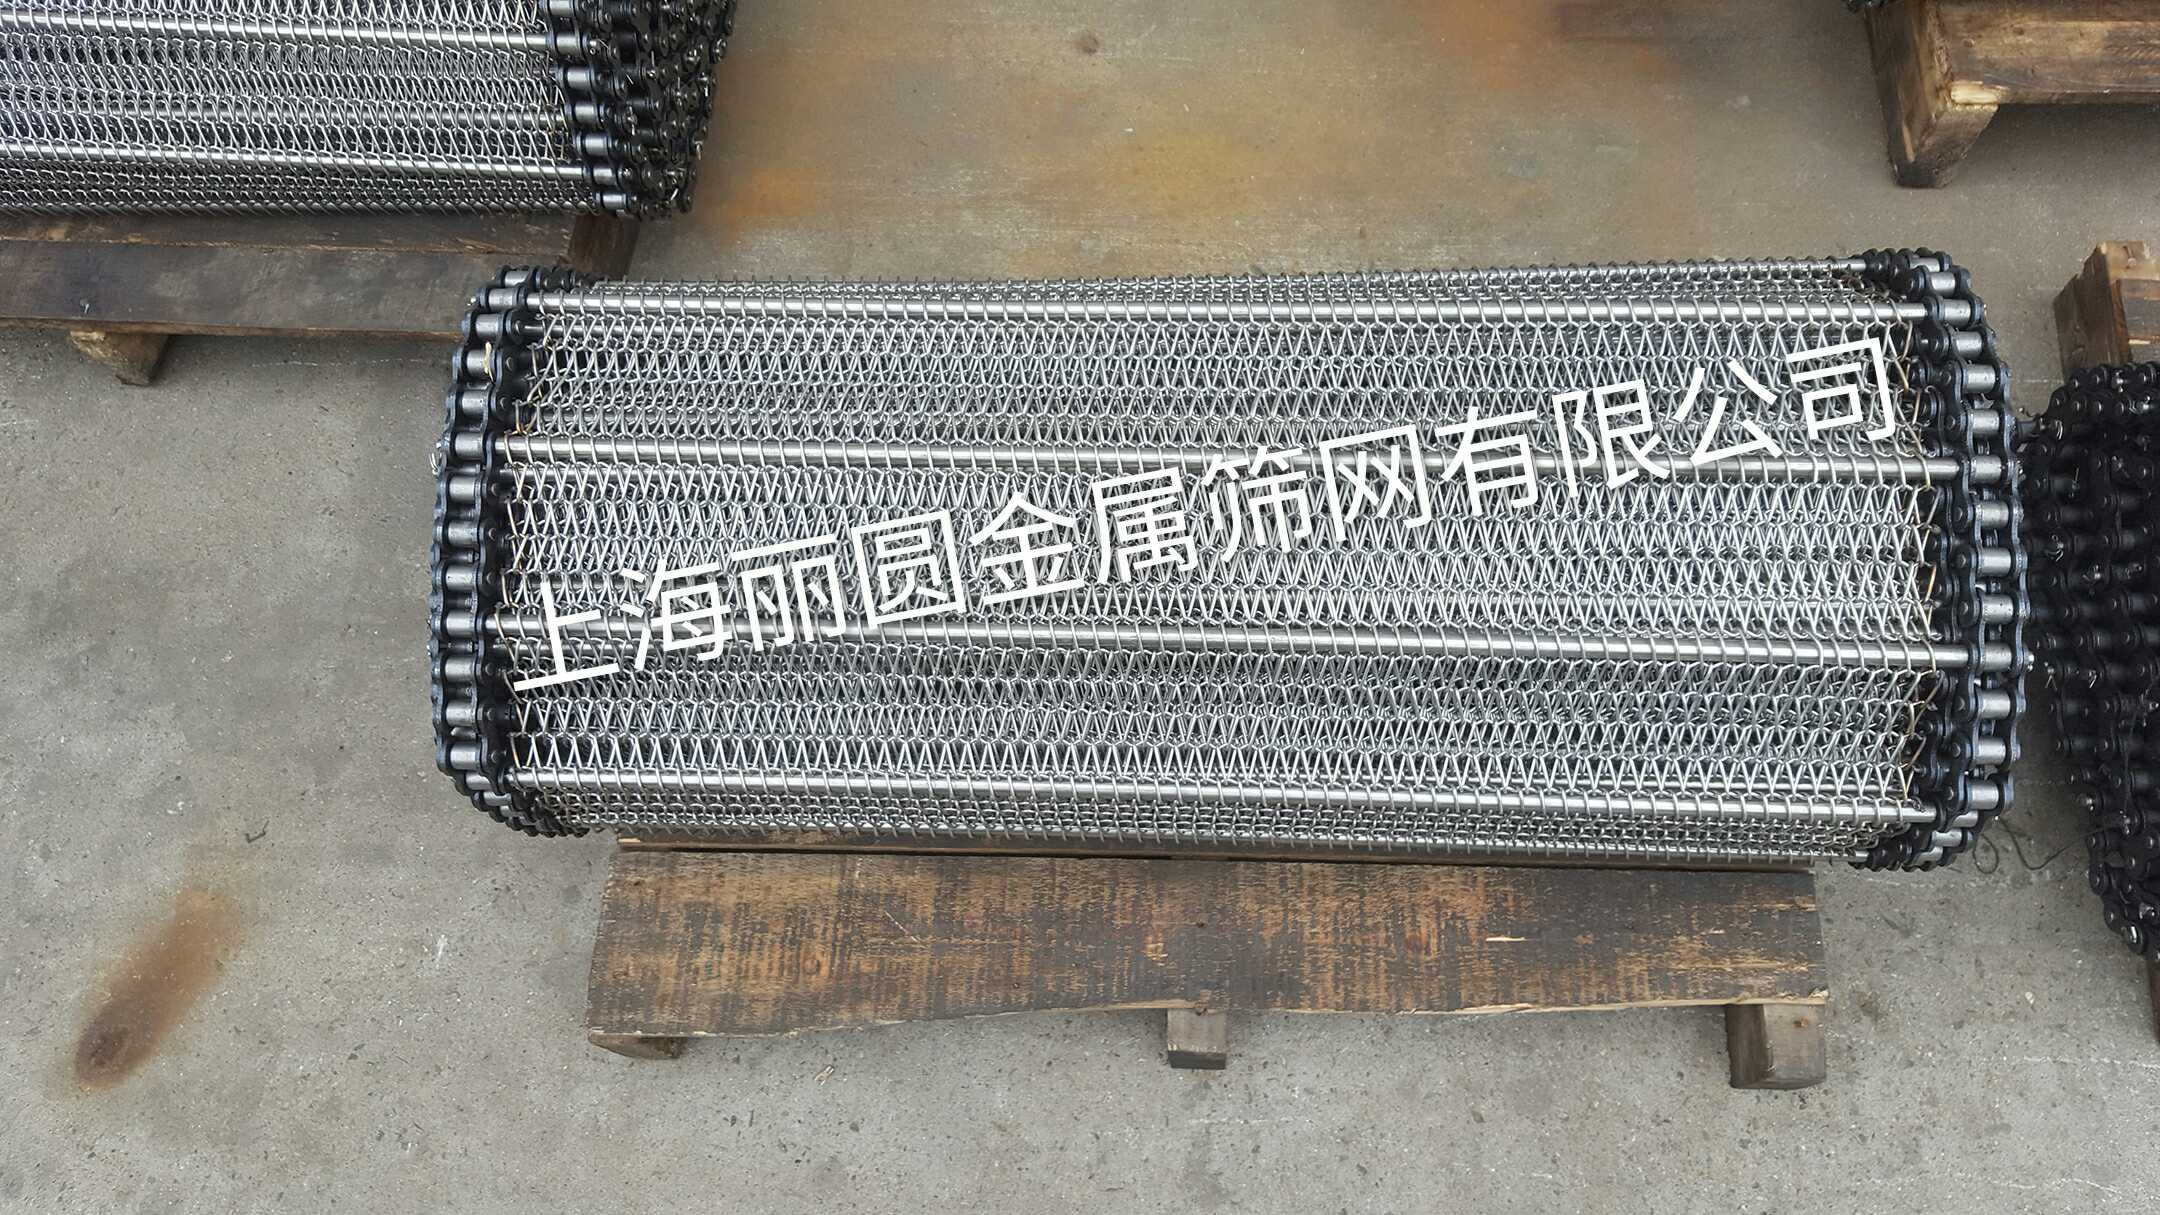 上海不锈钢输送网带、链条输送网带厂家  供应商  批发  价格 直销图片